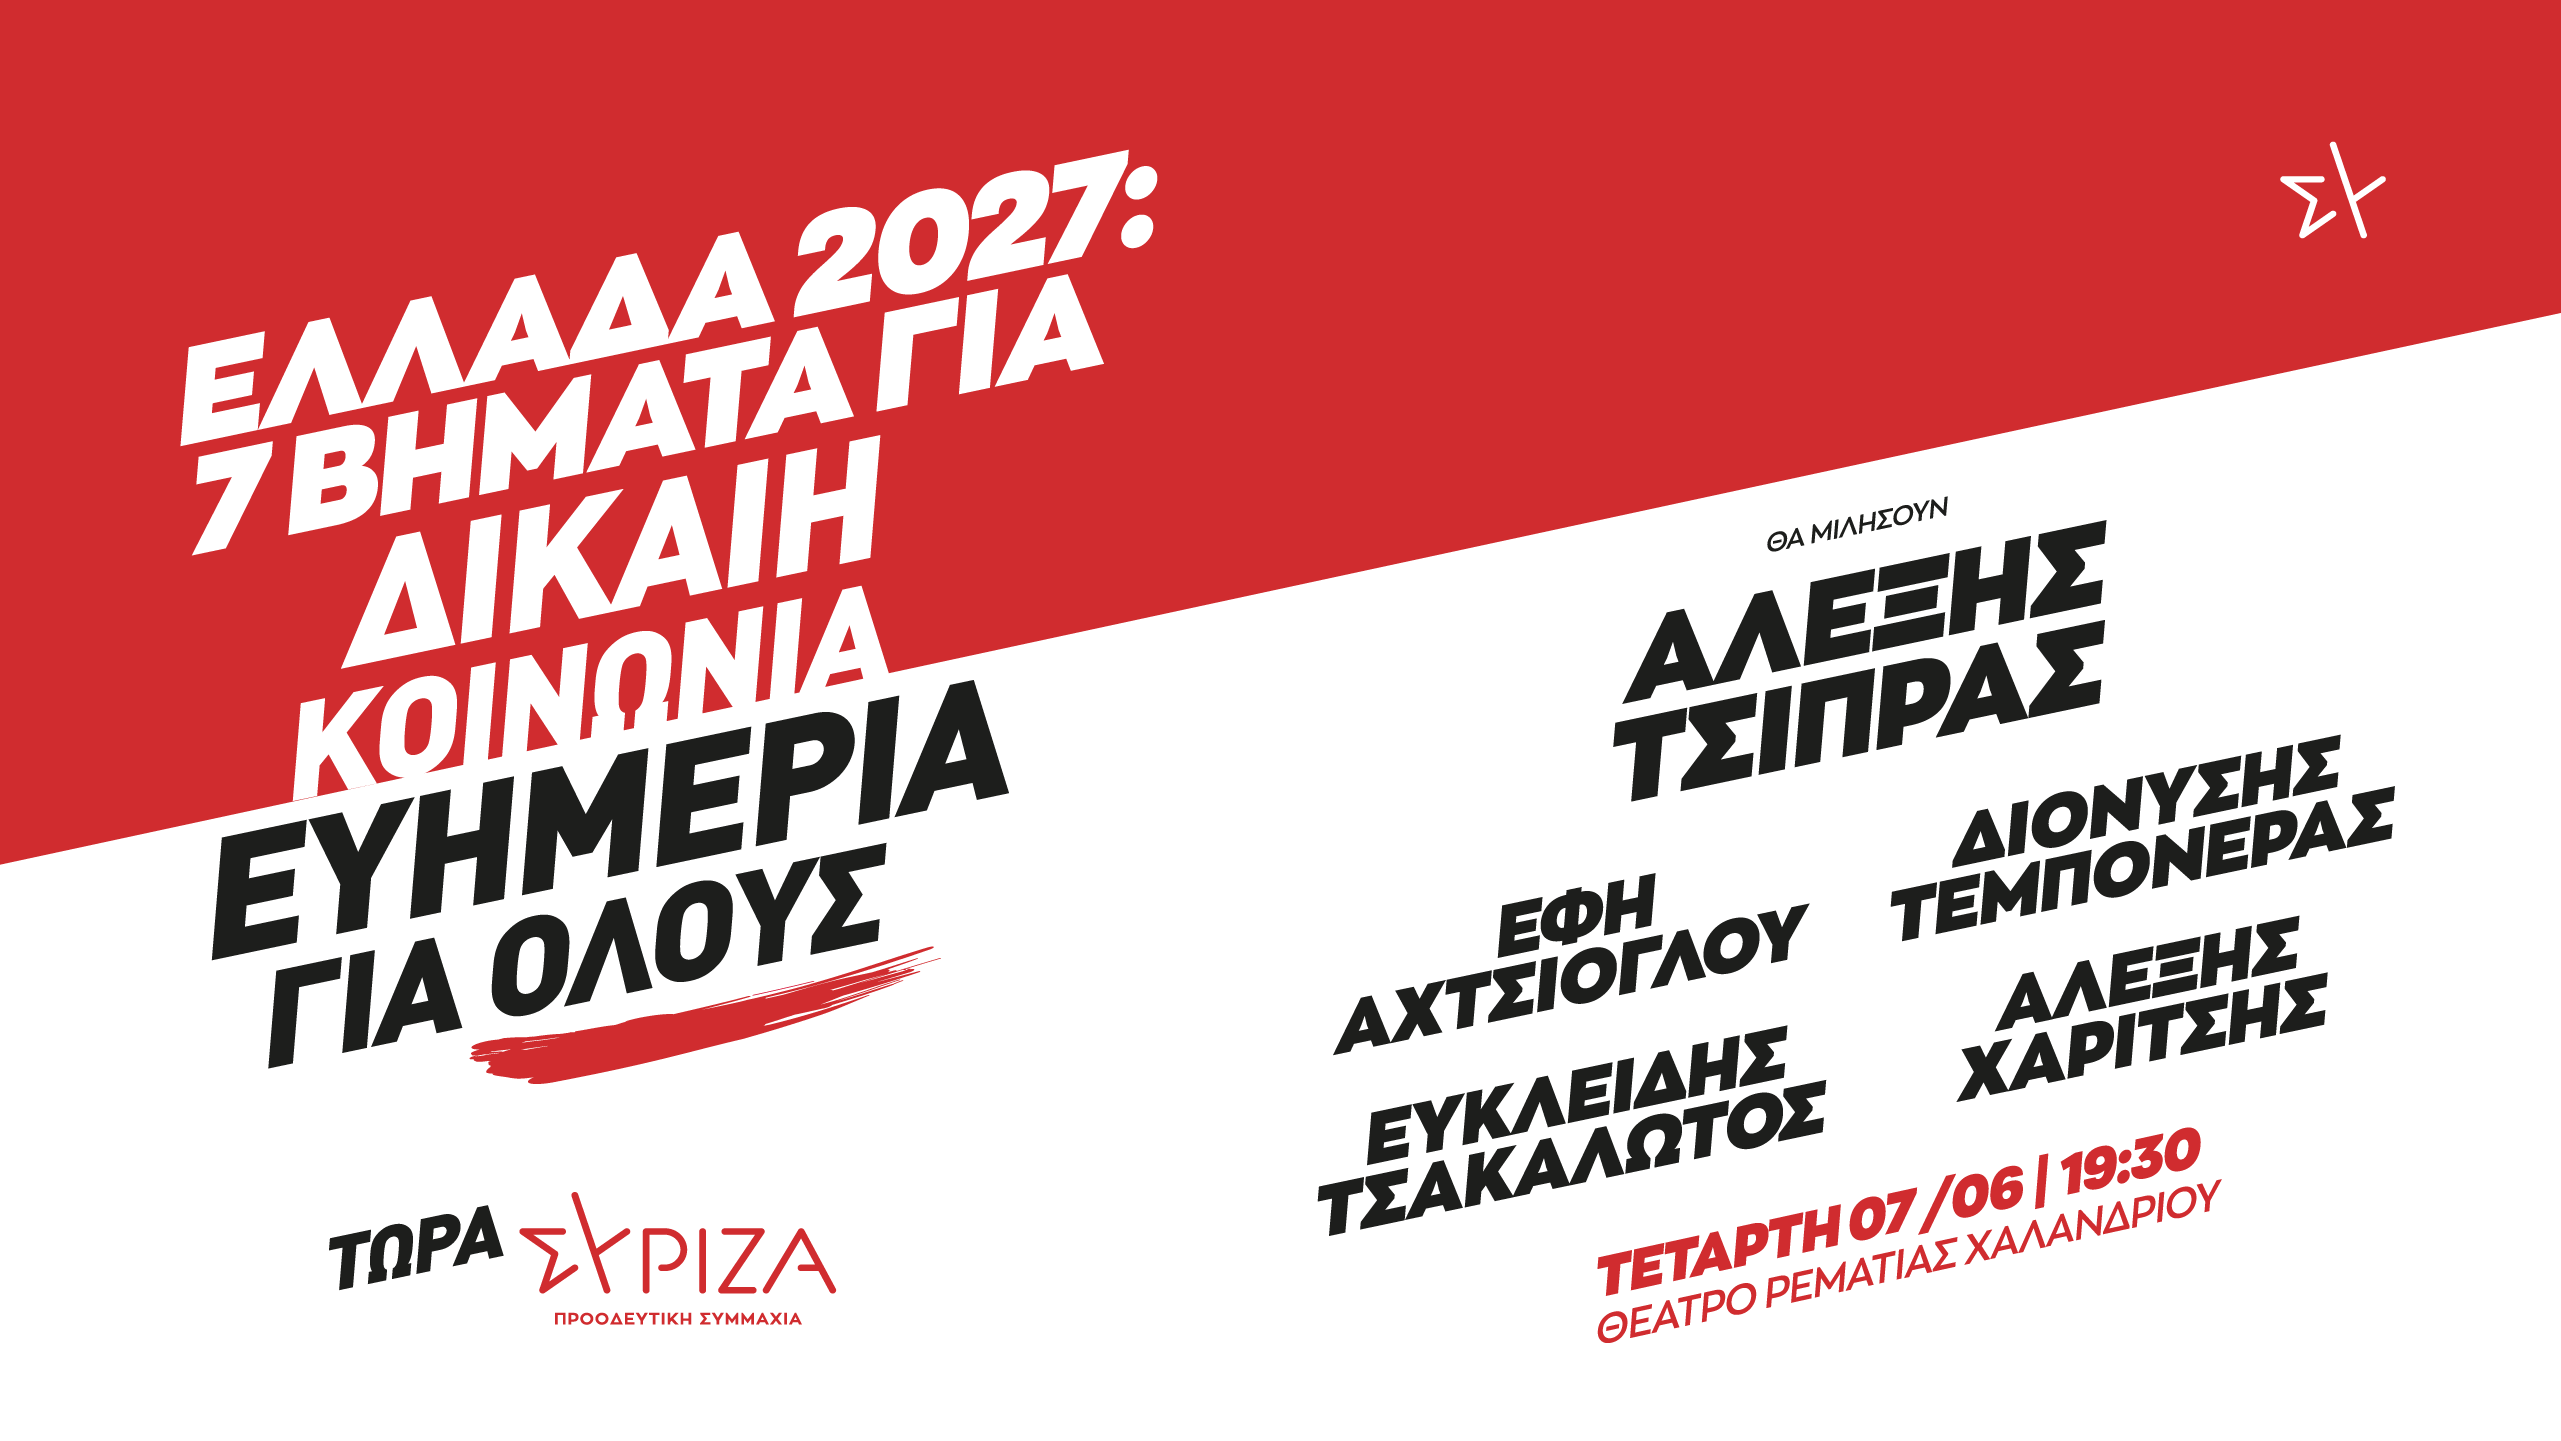 Παρουσίαση του προγράμματος του ΣΥΡΙΖΑ Προοδευτική Συμμαχία «Ελλάδα 2027: Επτά βήματα για Δίκαιη Κοινωνία και Ευημερία για Όλους» από τον Πρόεδρο του κόμματος, Αλέξη Τσίπρα